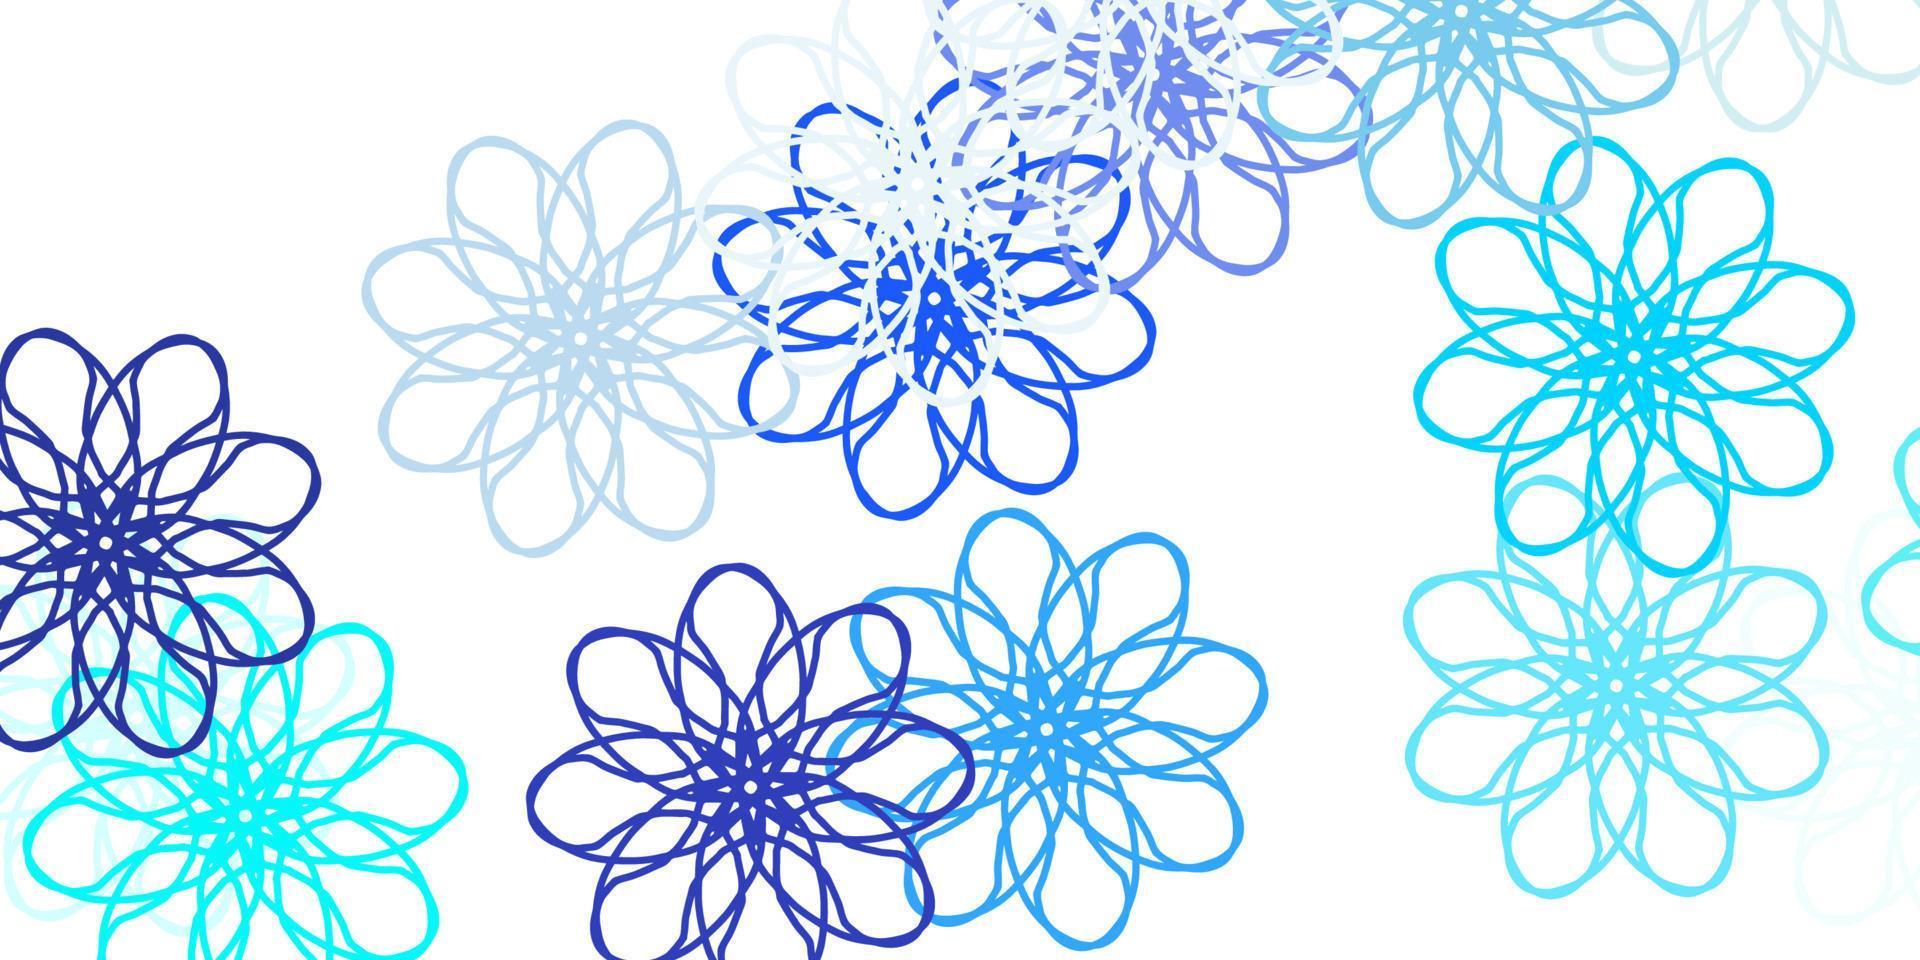 hellblaue Vektor Gekritzelschablone mit Blumen.